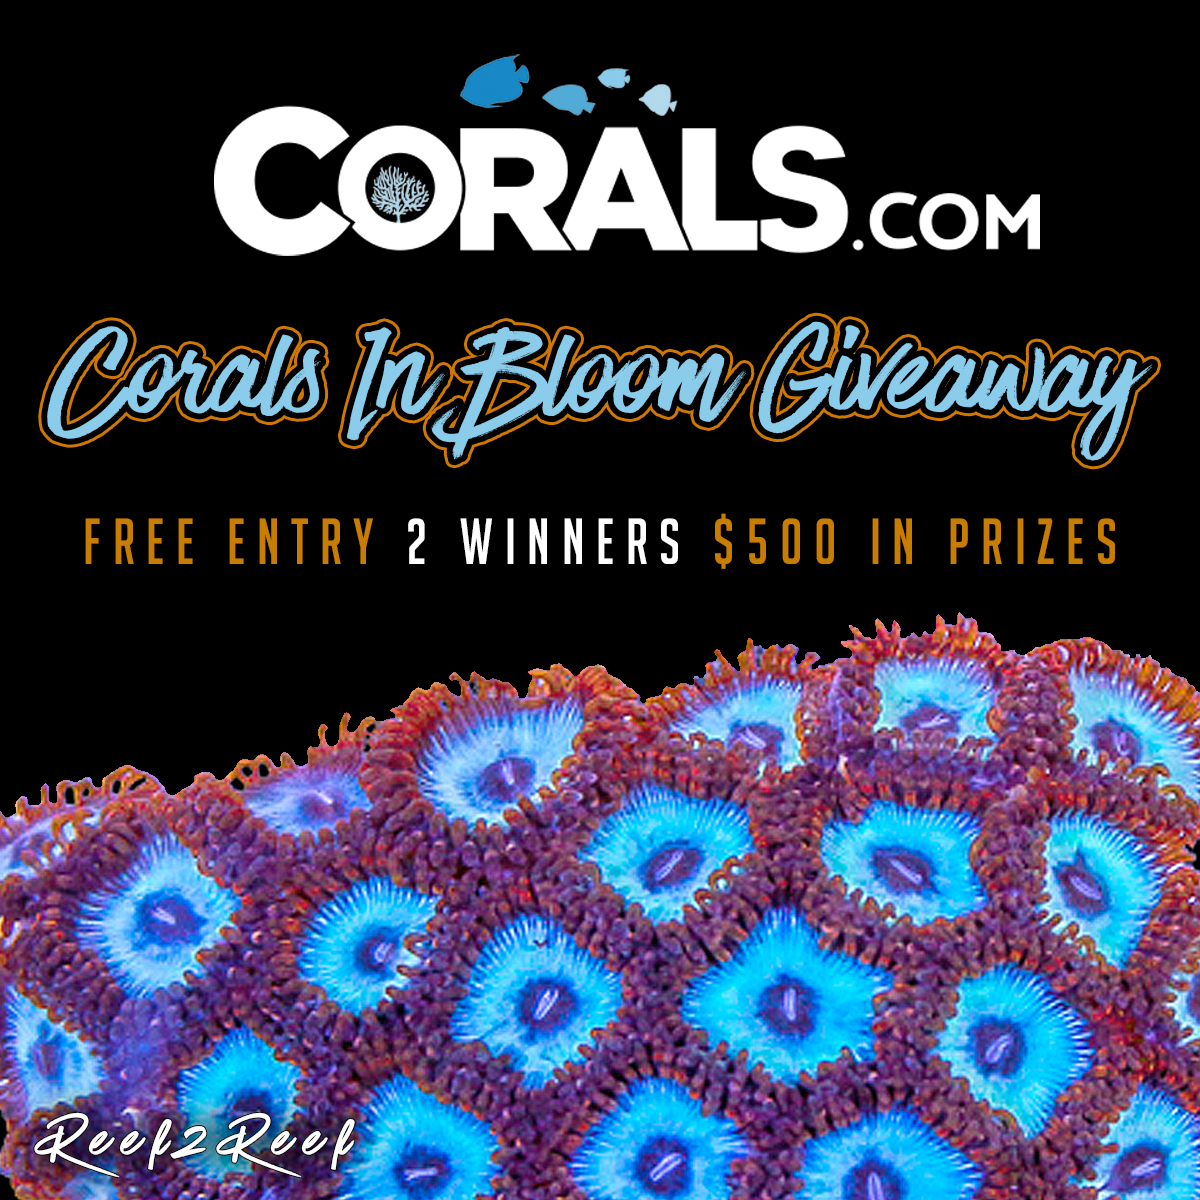 Corals.com Giveaway copy.jpg